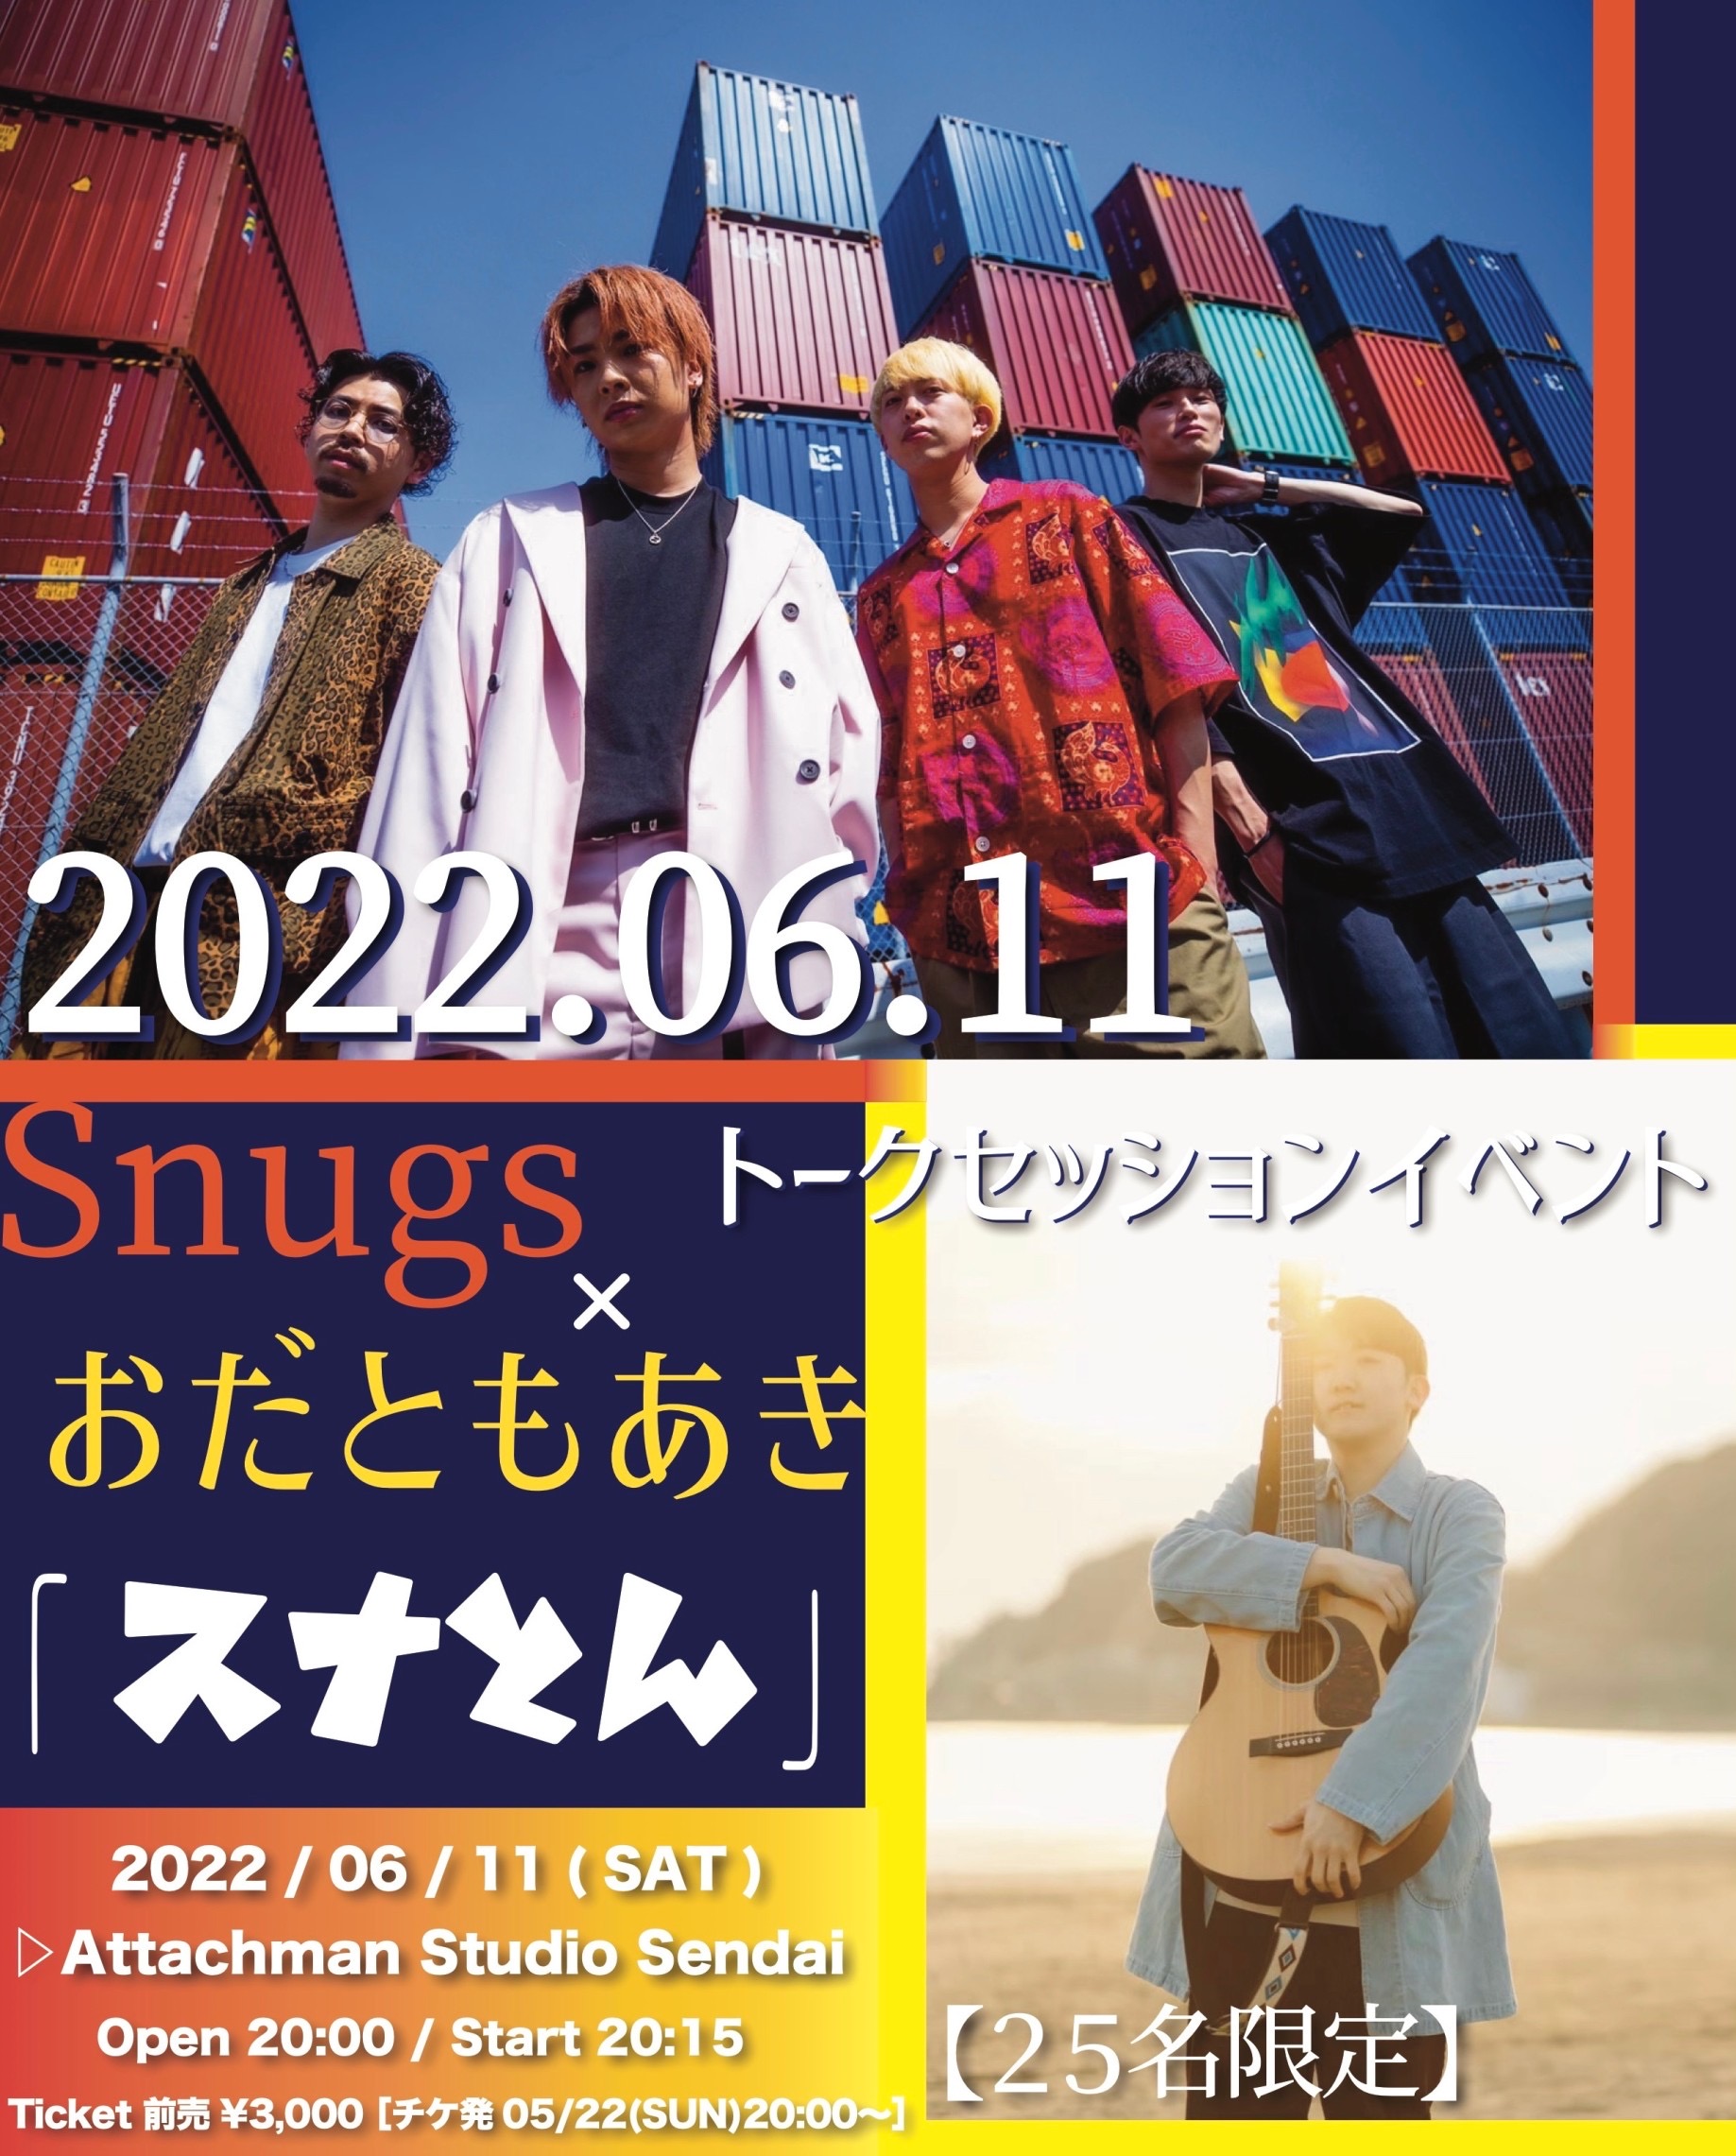 Snugs × おだともあき トークセッションイベント 「 スナとん 」